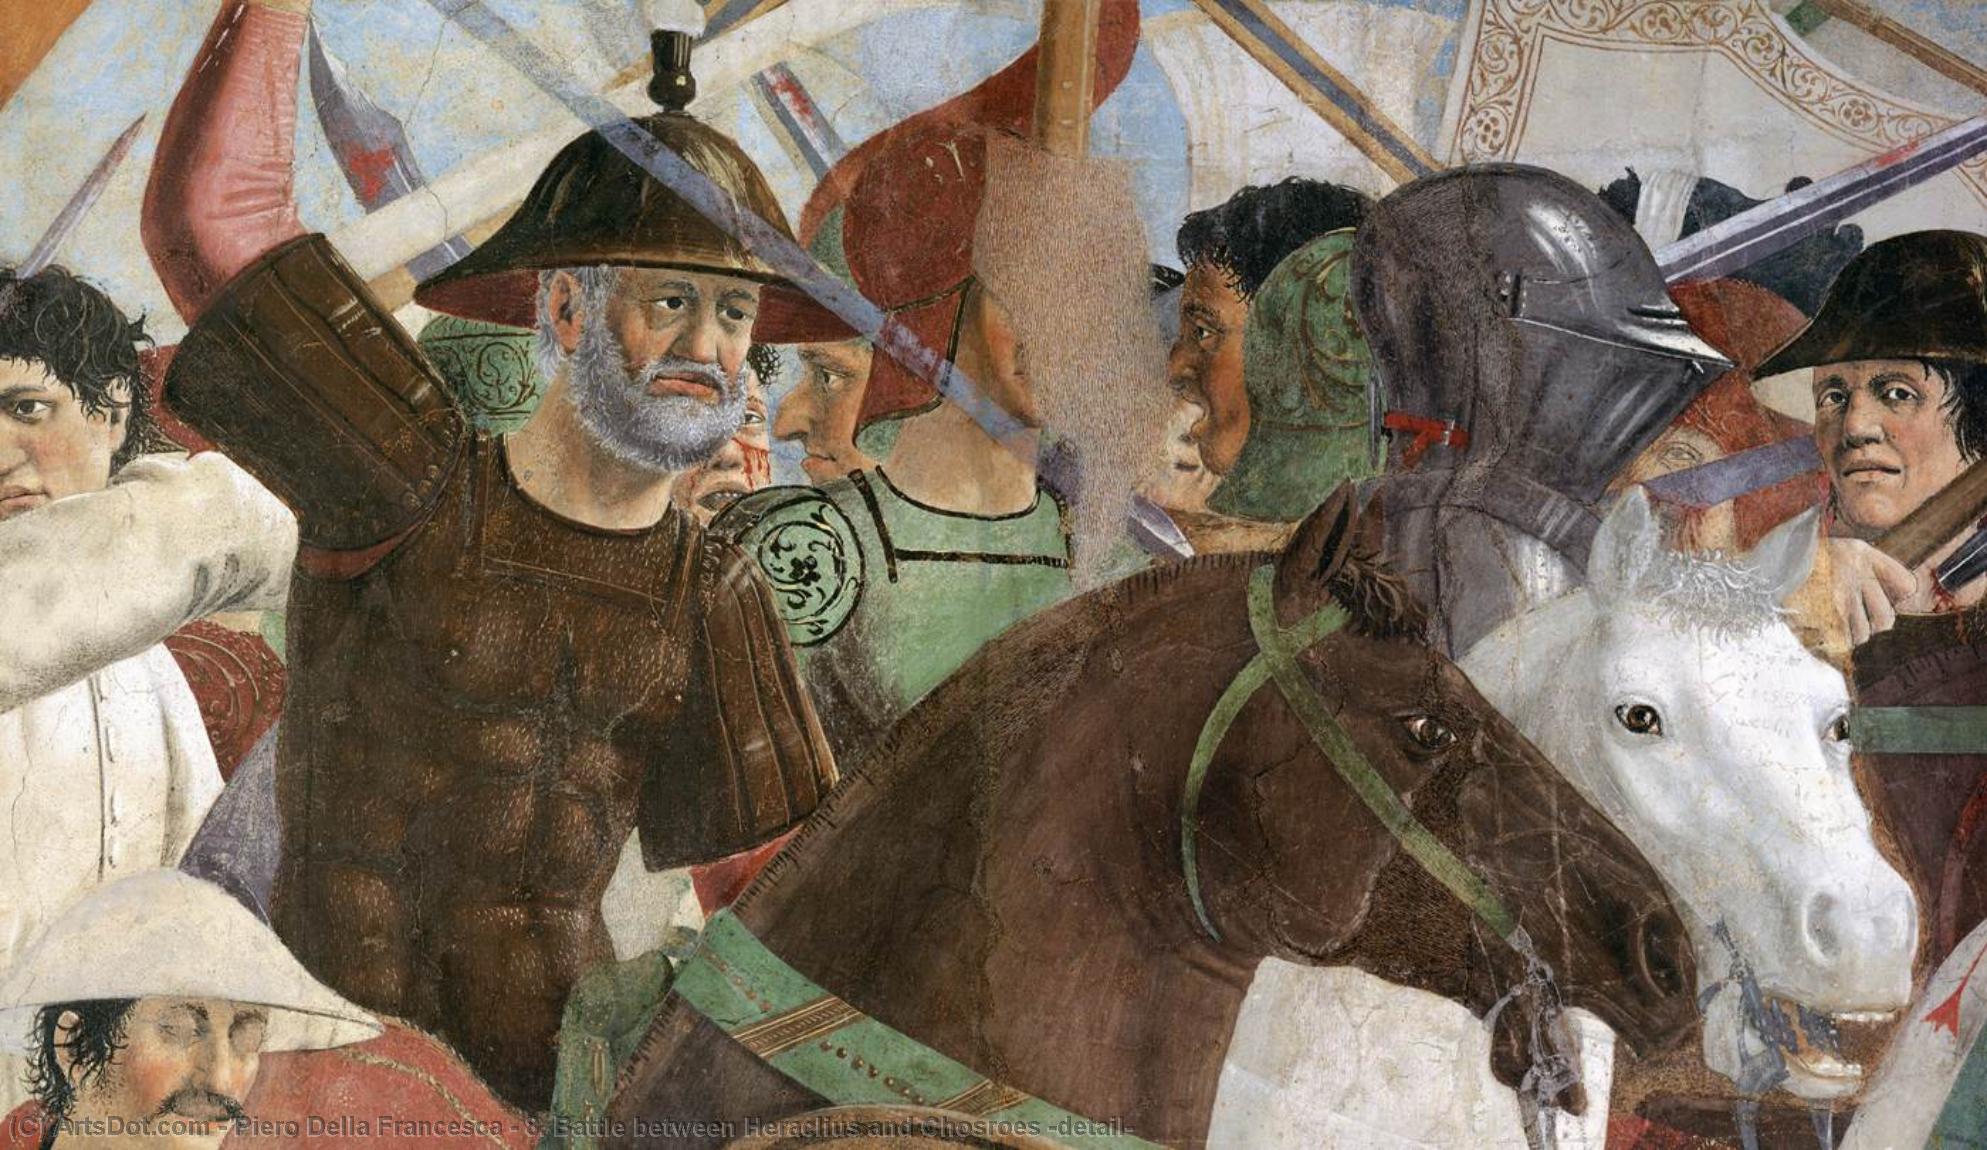 WikiOO.org - Enciklopedija likovnih umjetnosti - Slikarstvo, umjetnička djela Piero Della Francesca - 8. Battle between Heraclius and Chosroes (detail)